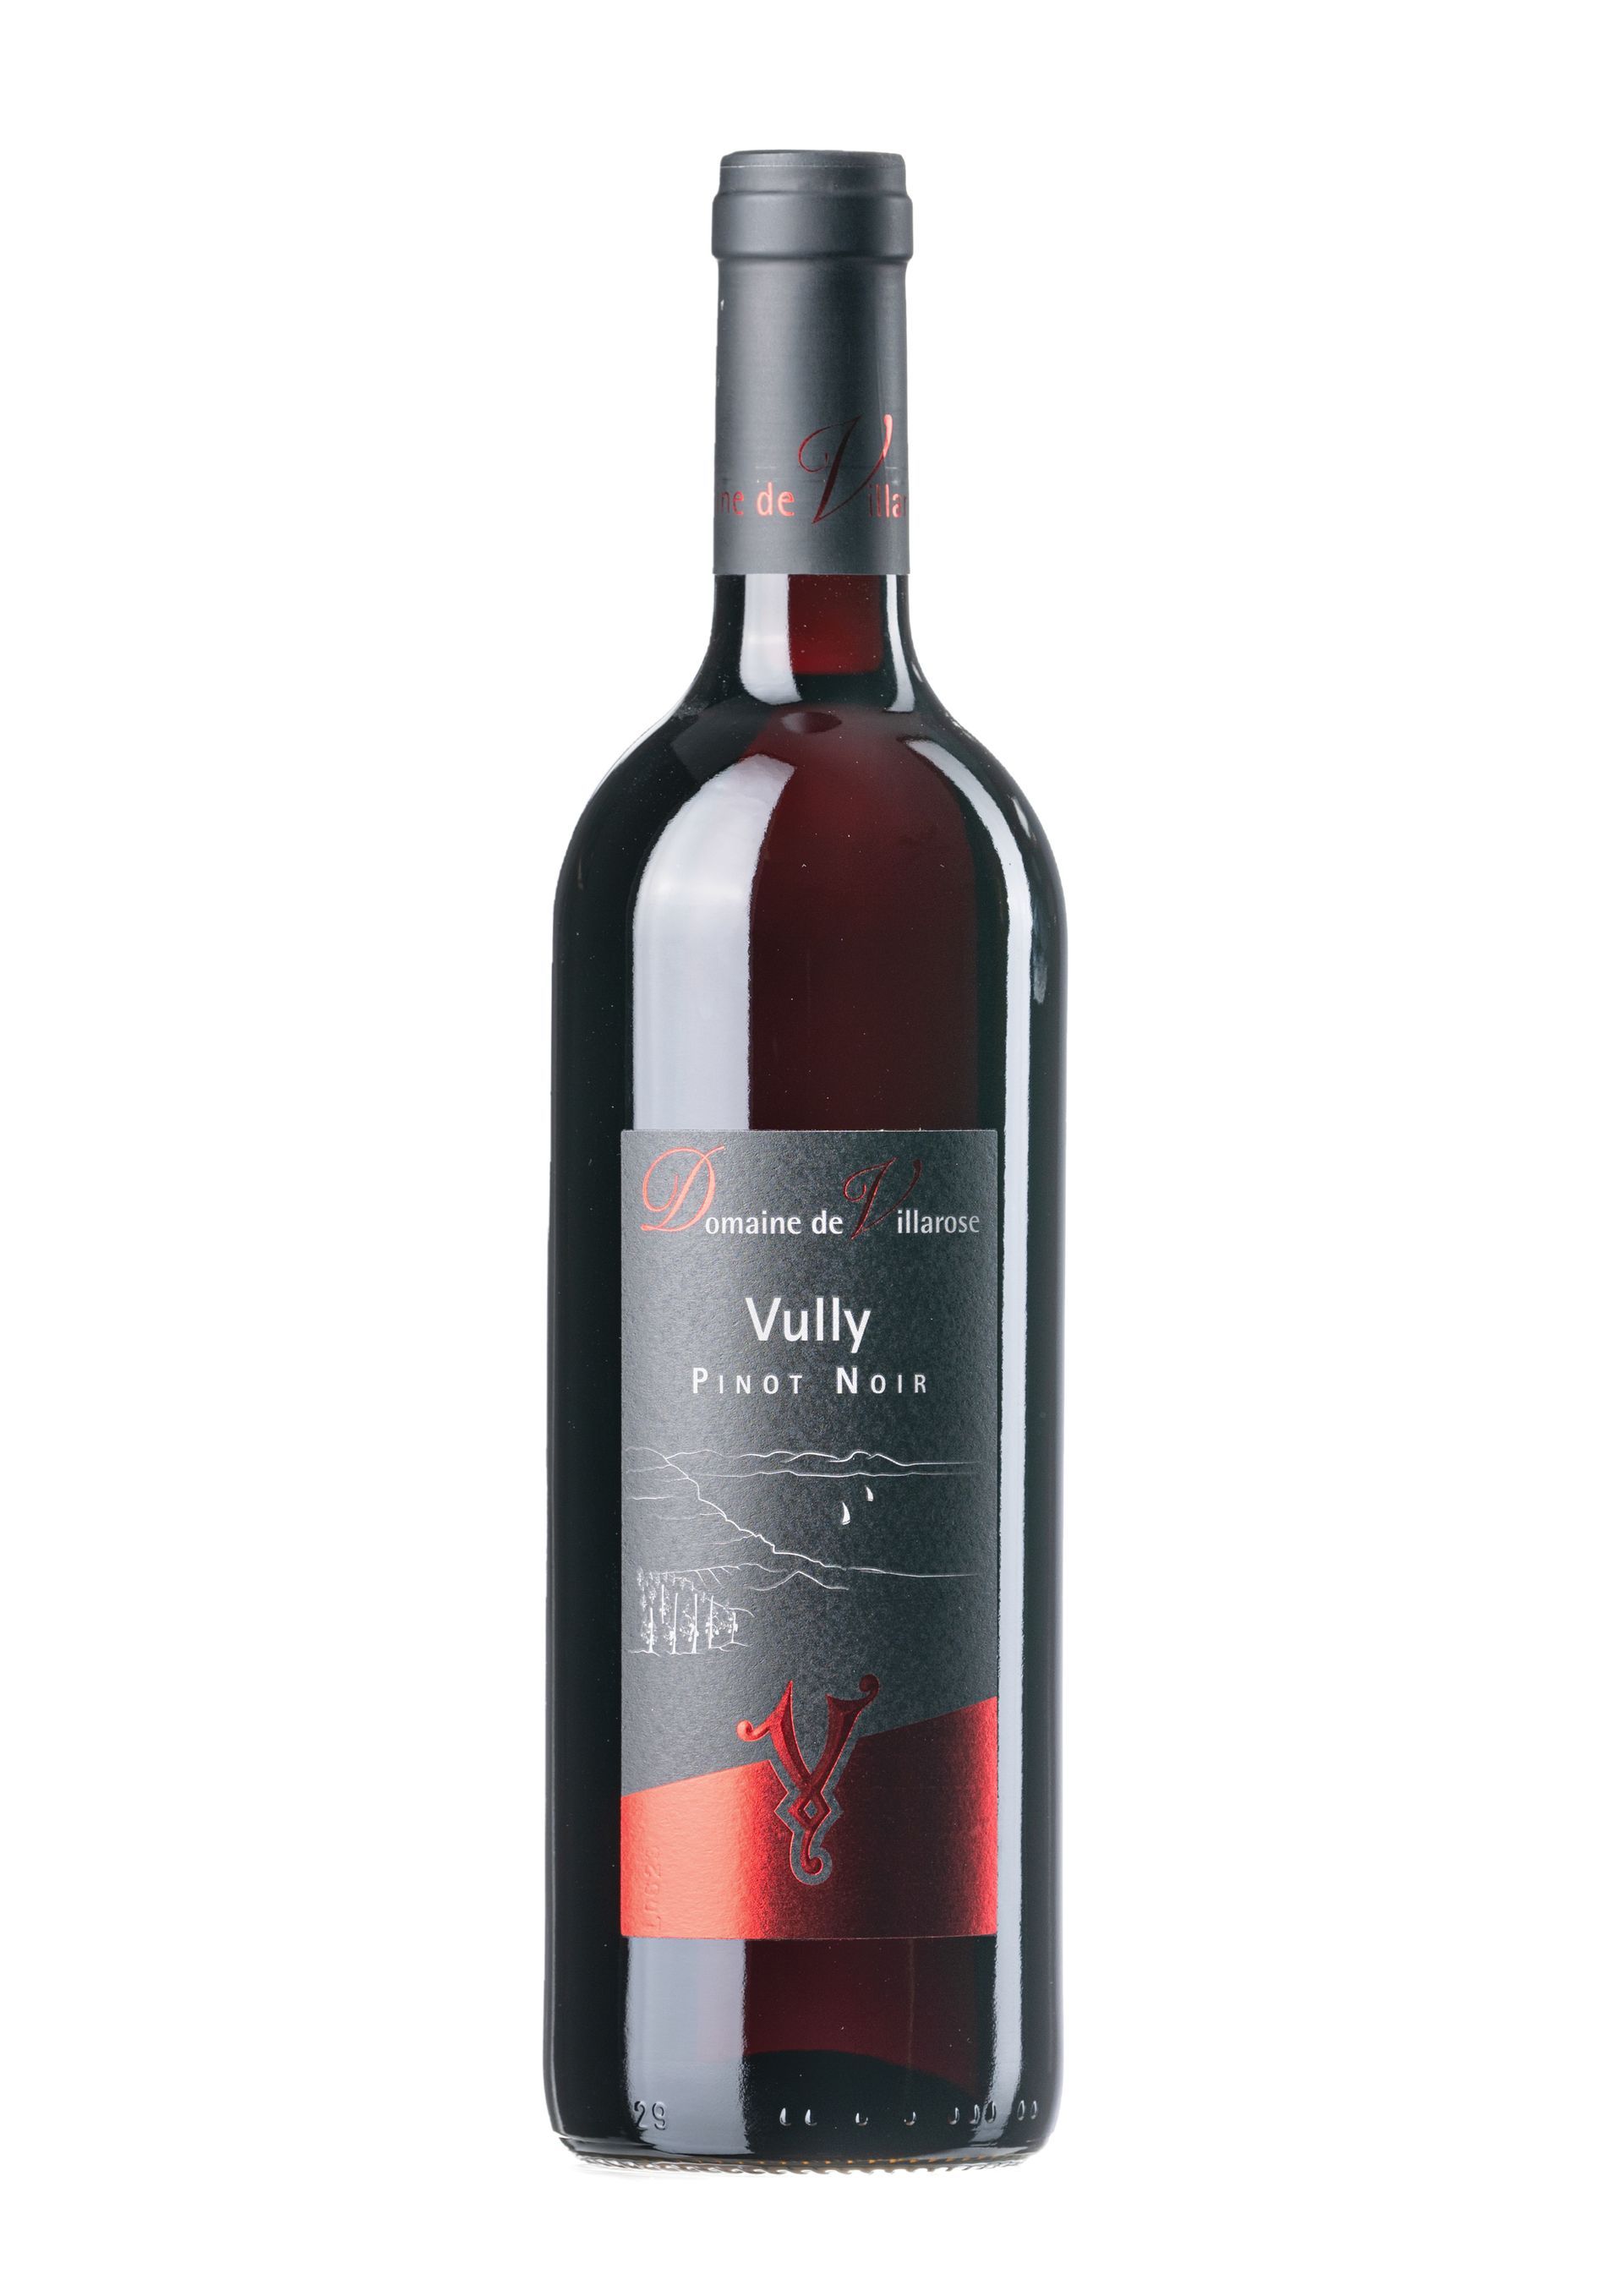 Vully rouge Pinot Noir - Domaine de Villarose à Vully